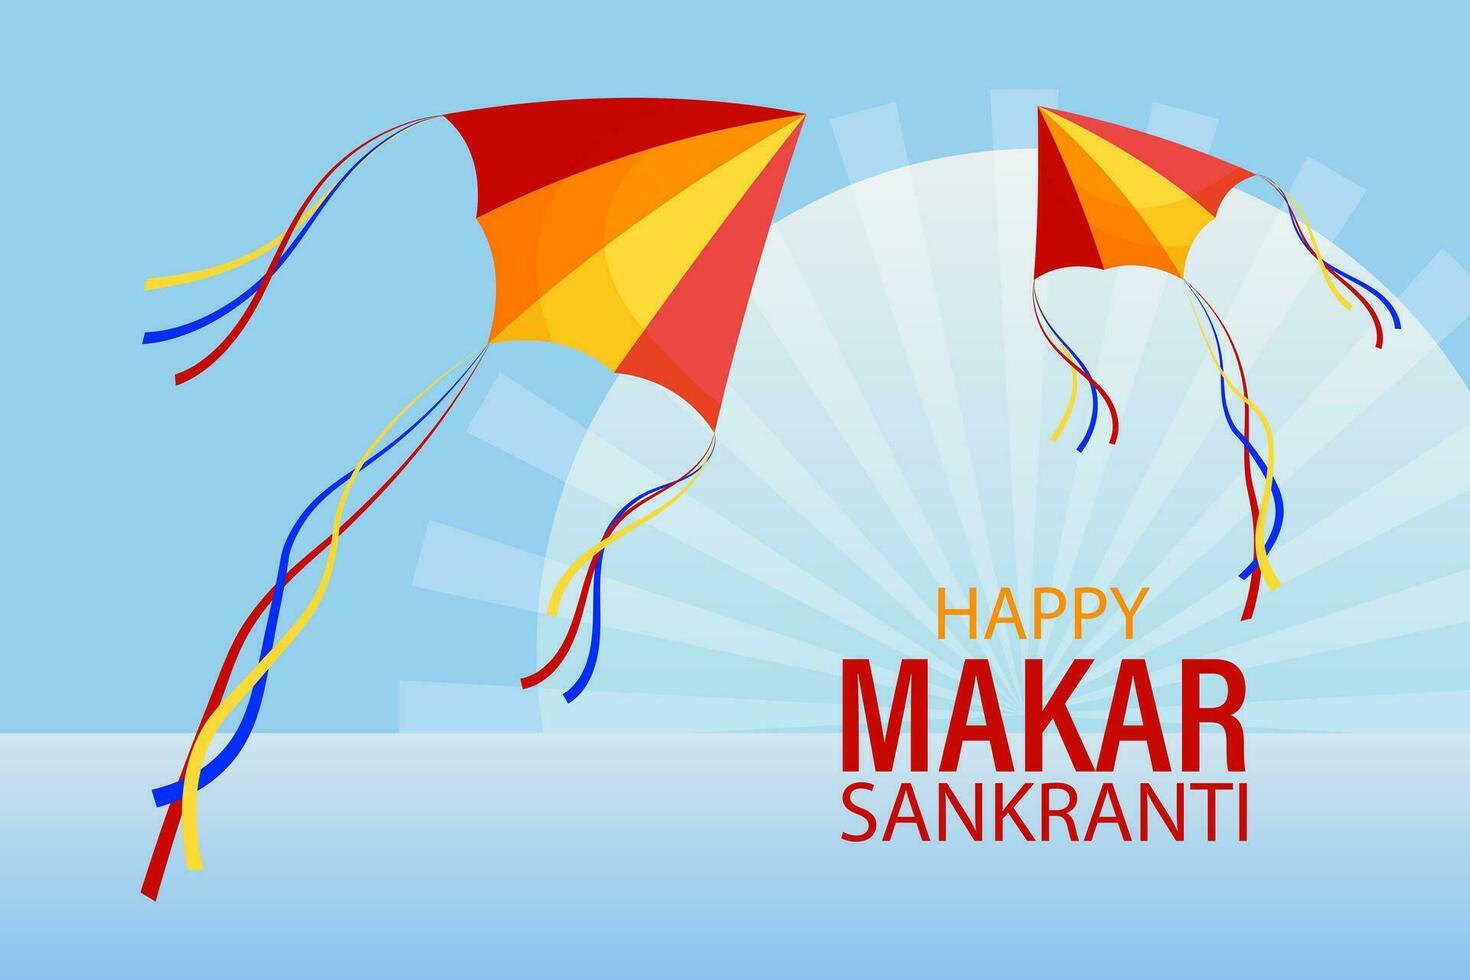 heureux makar sankranti, cerf-volant coloré dans le ciel avec des nuages. carte de vacances hindoue, vecteur